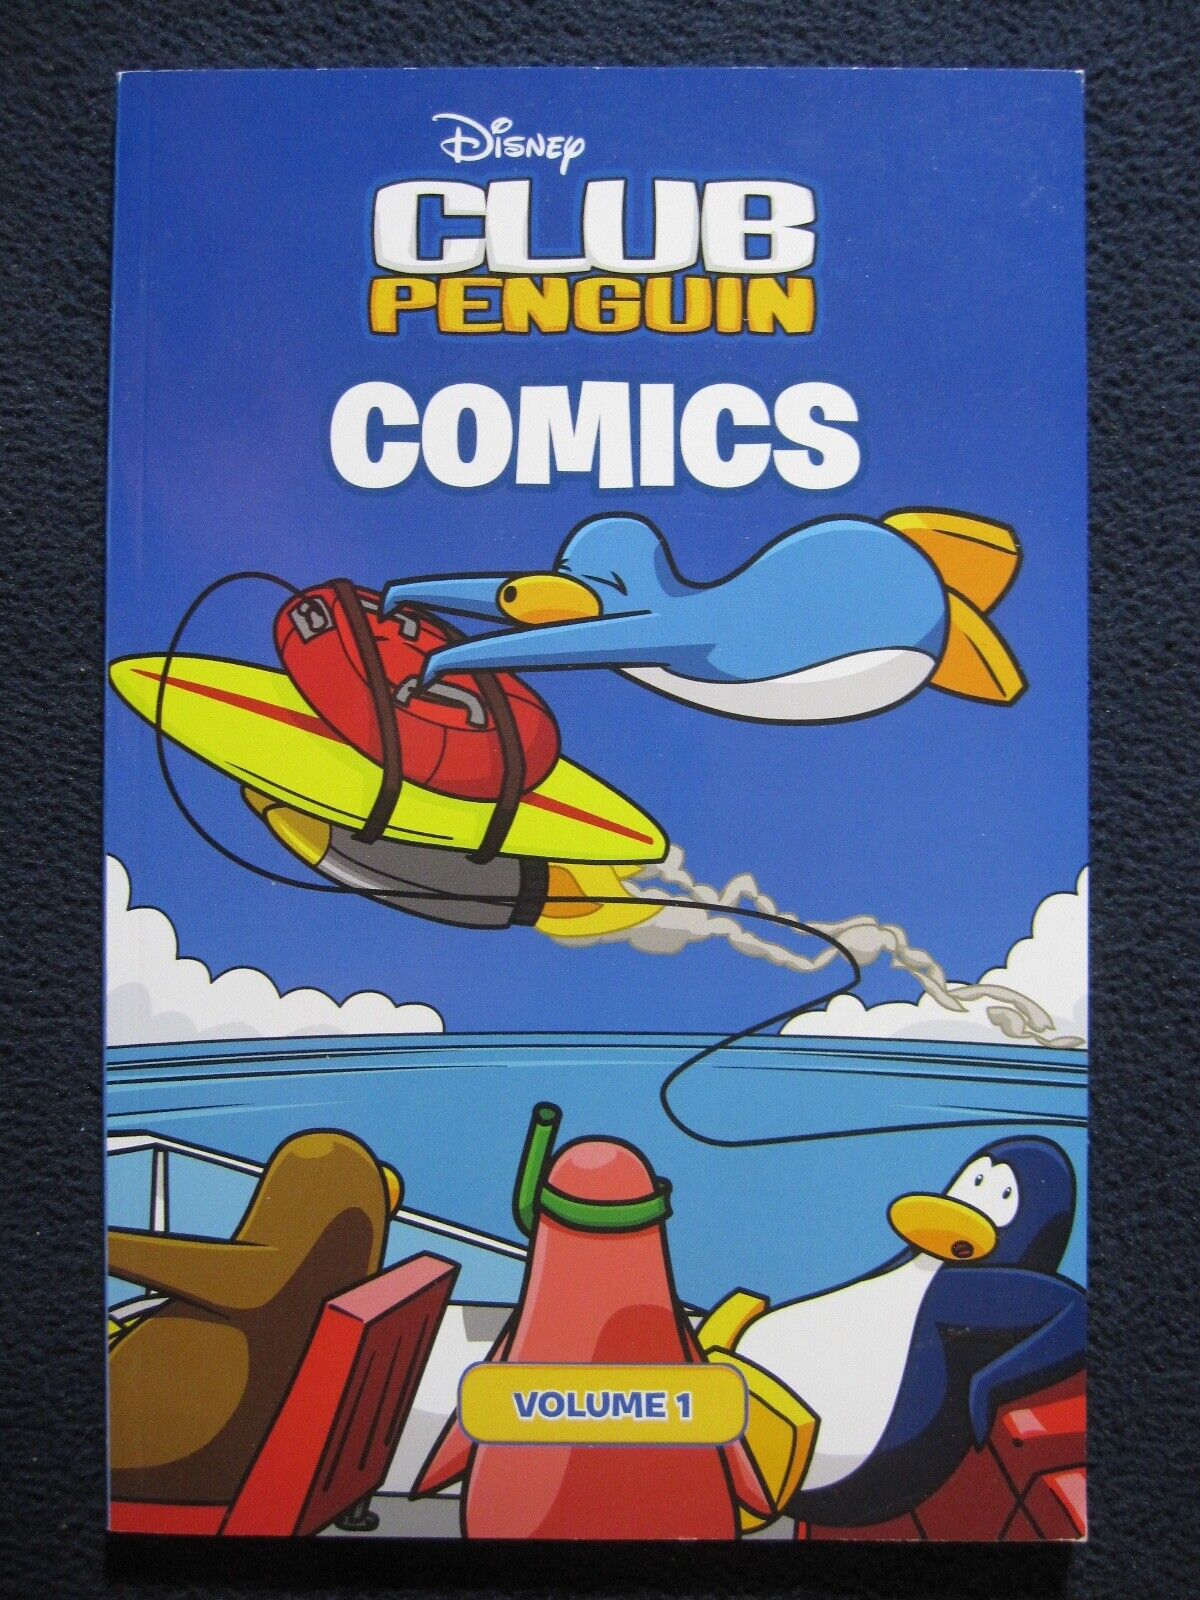 Club Penguin Comics: Volume 1 (Disney Club Penguin) [Oct 15, 2009] Penguin Gro..